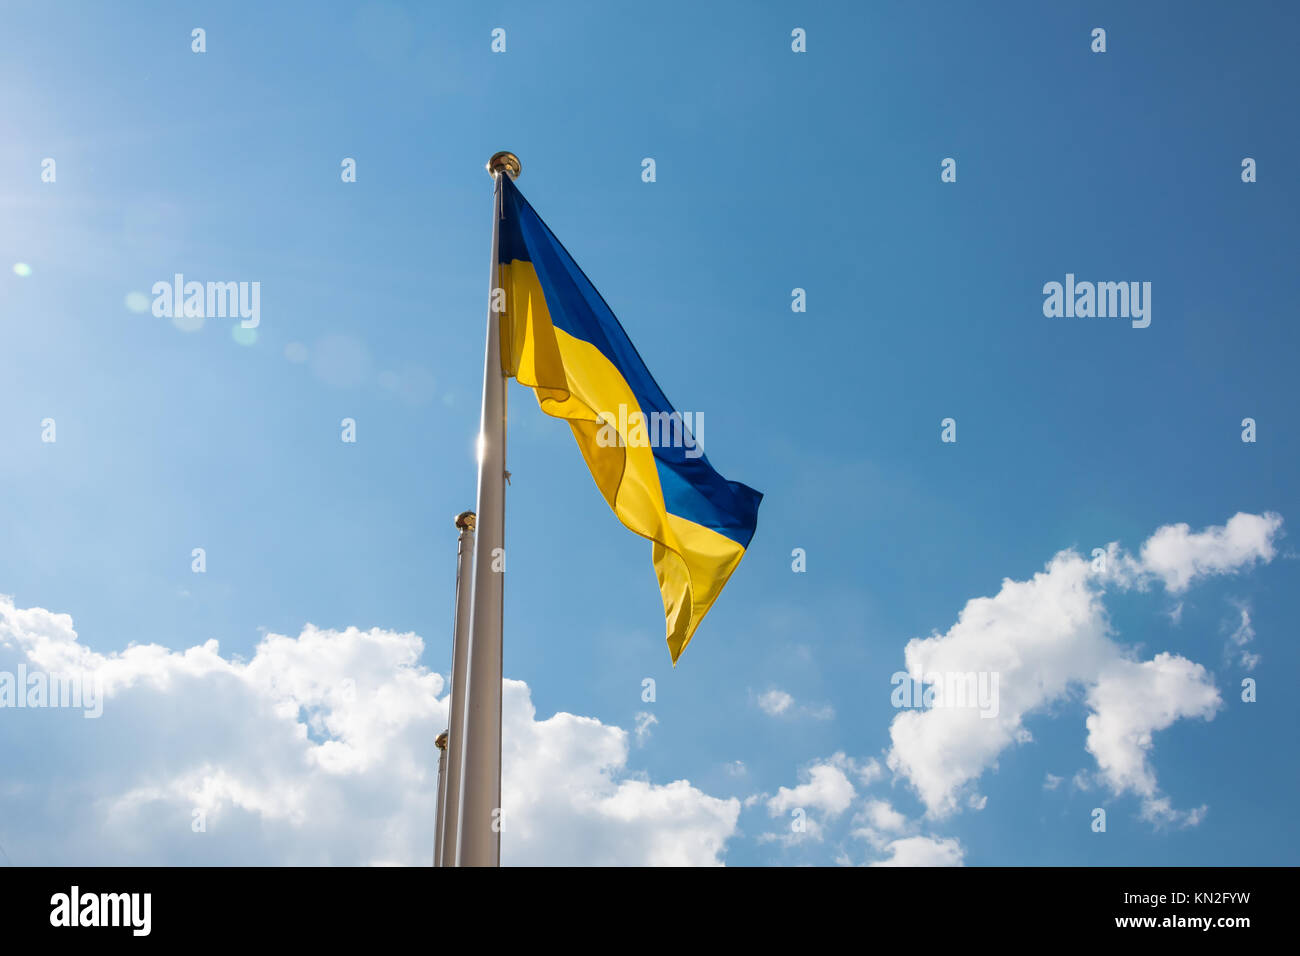 Ukrainian flag fluttering in the sky Stock Photo